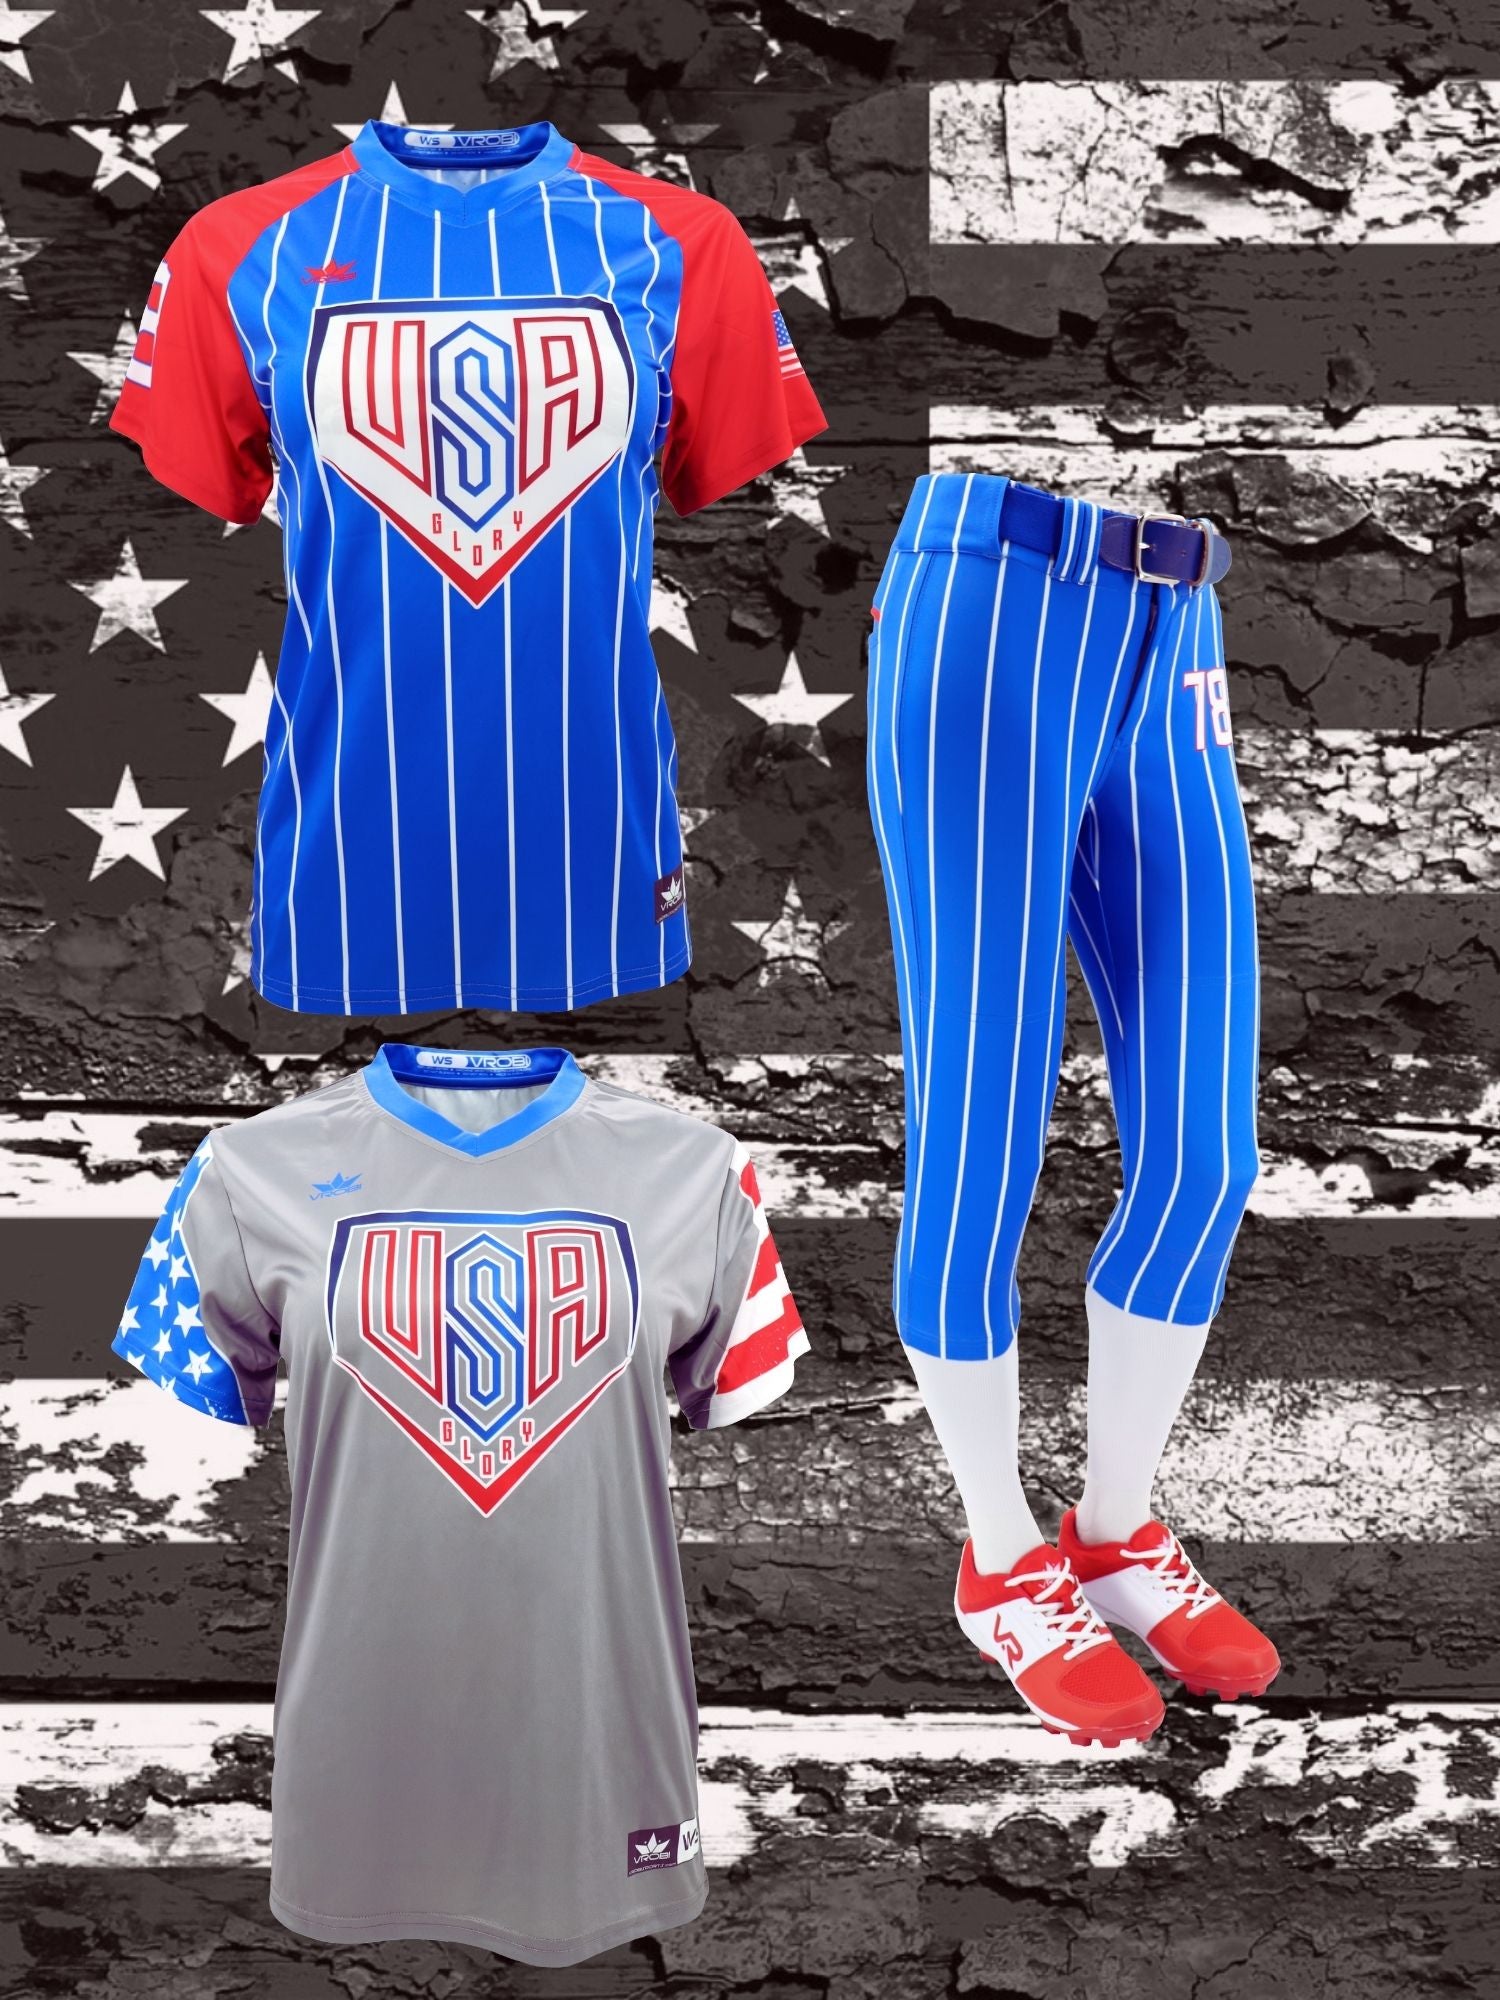 Custom Baseball Jersey Stitched Personalized Baseball Shirts Sports Uniform  for Men Women Boy 